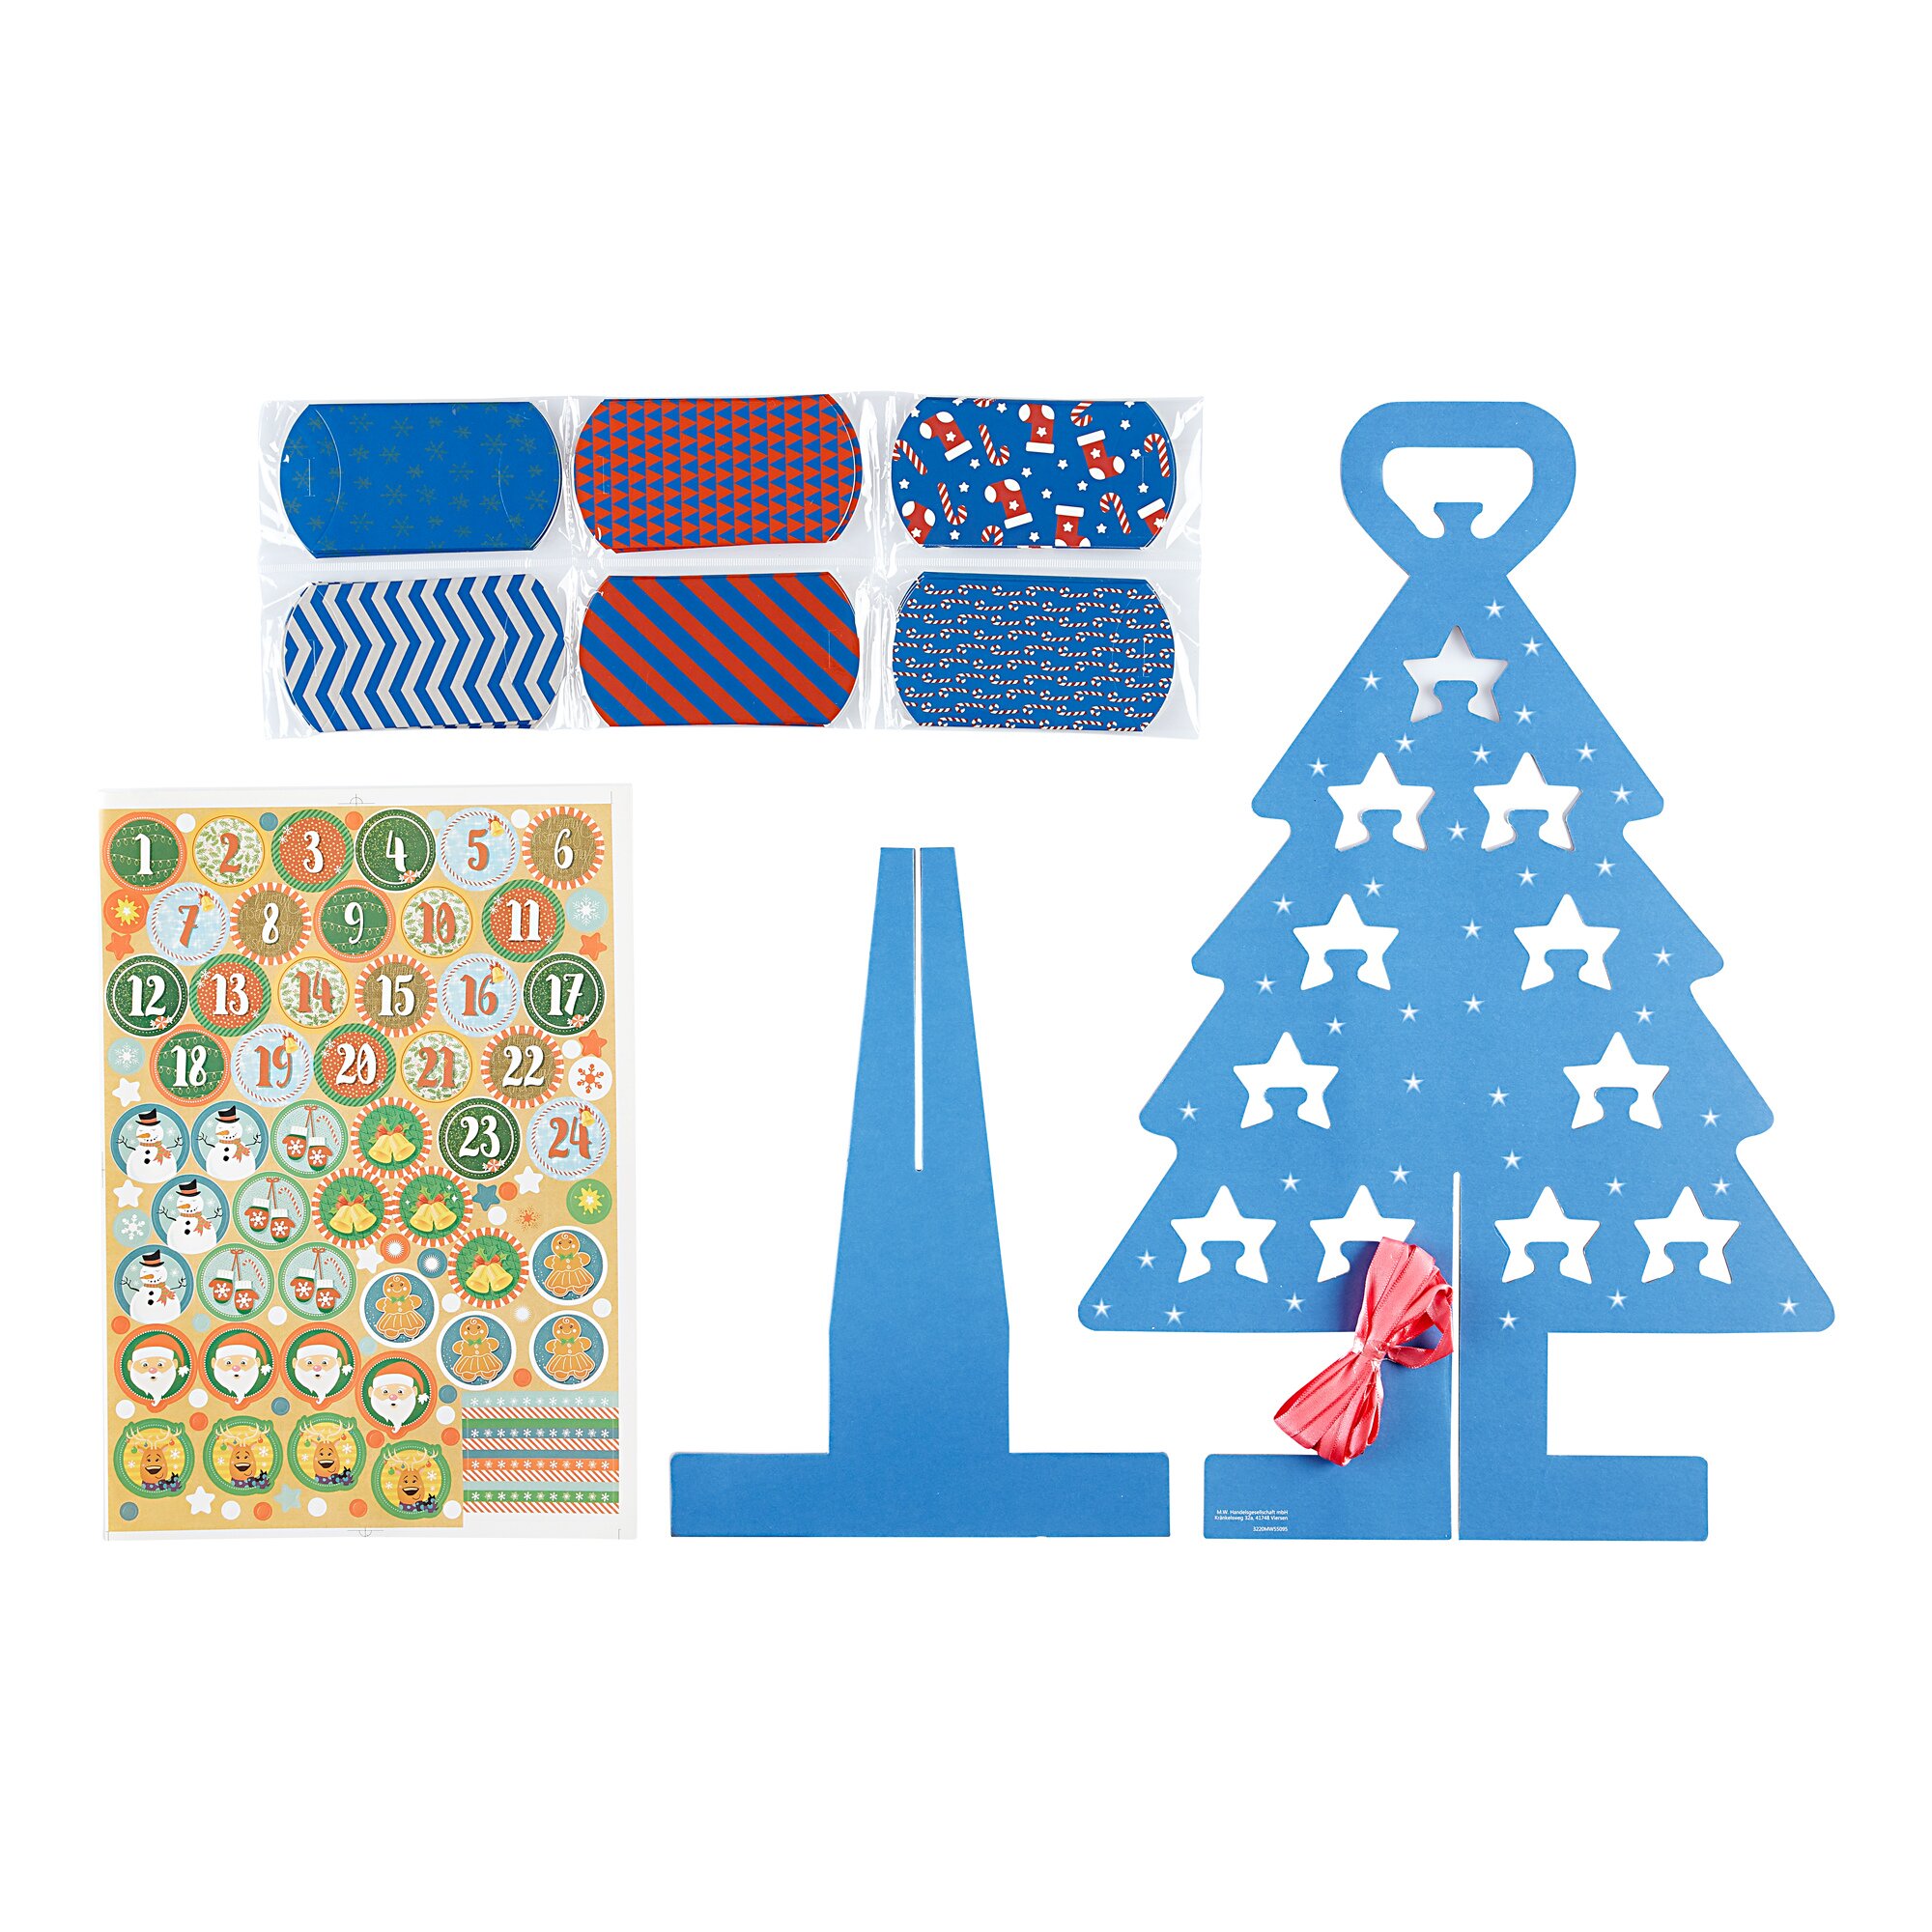 Image of Adventskalender "Weihnachtsbaum", blau